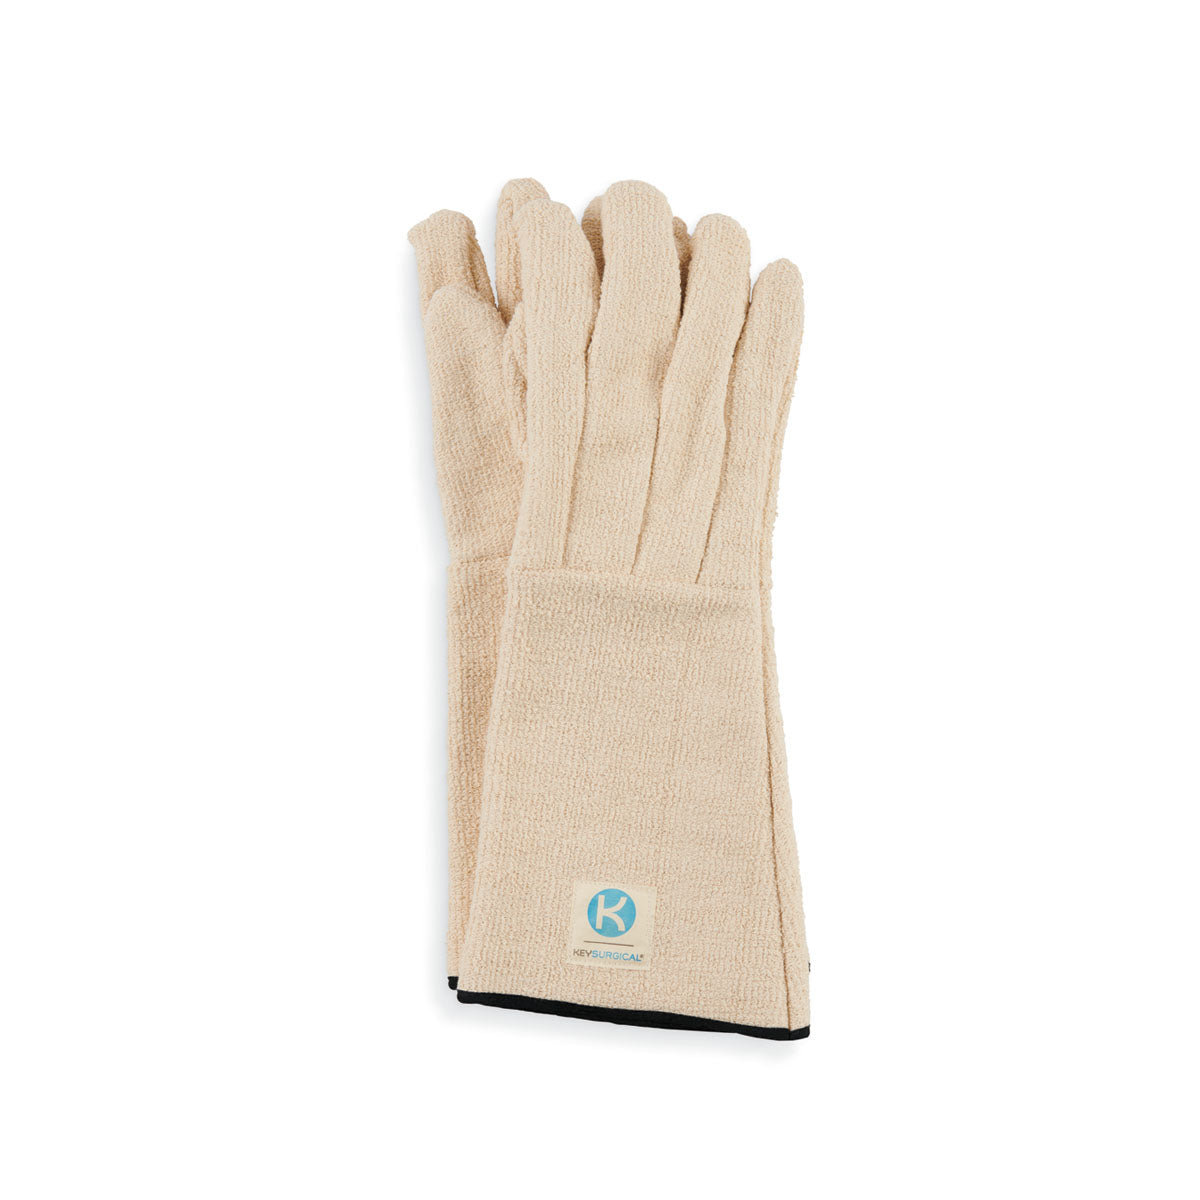 Steriliser Gloves - 16 Inch Long, 2/PR